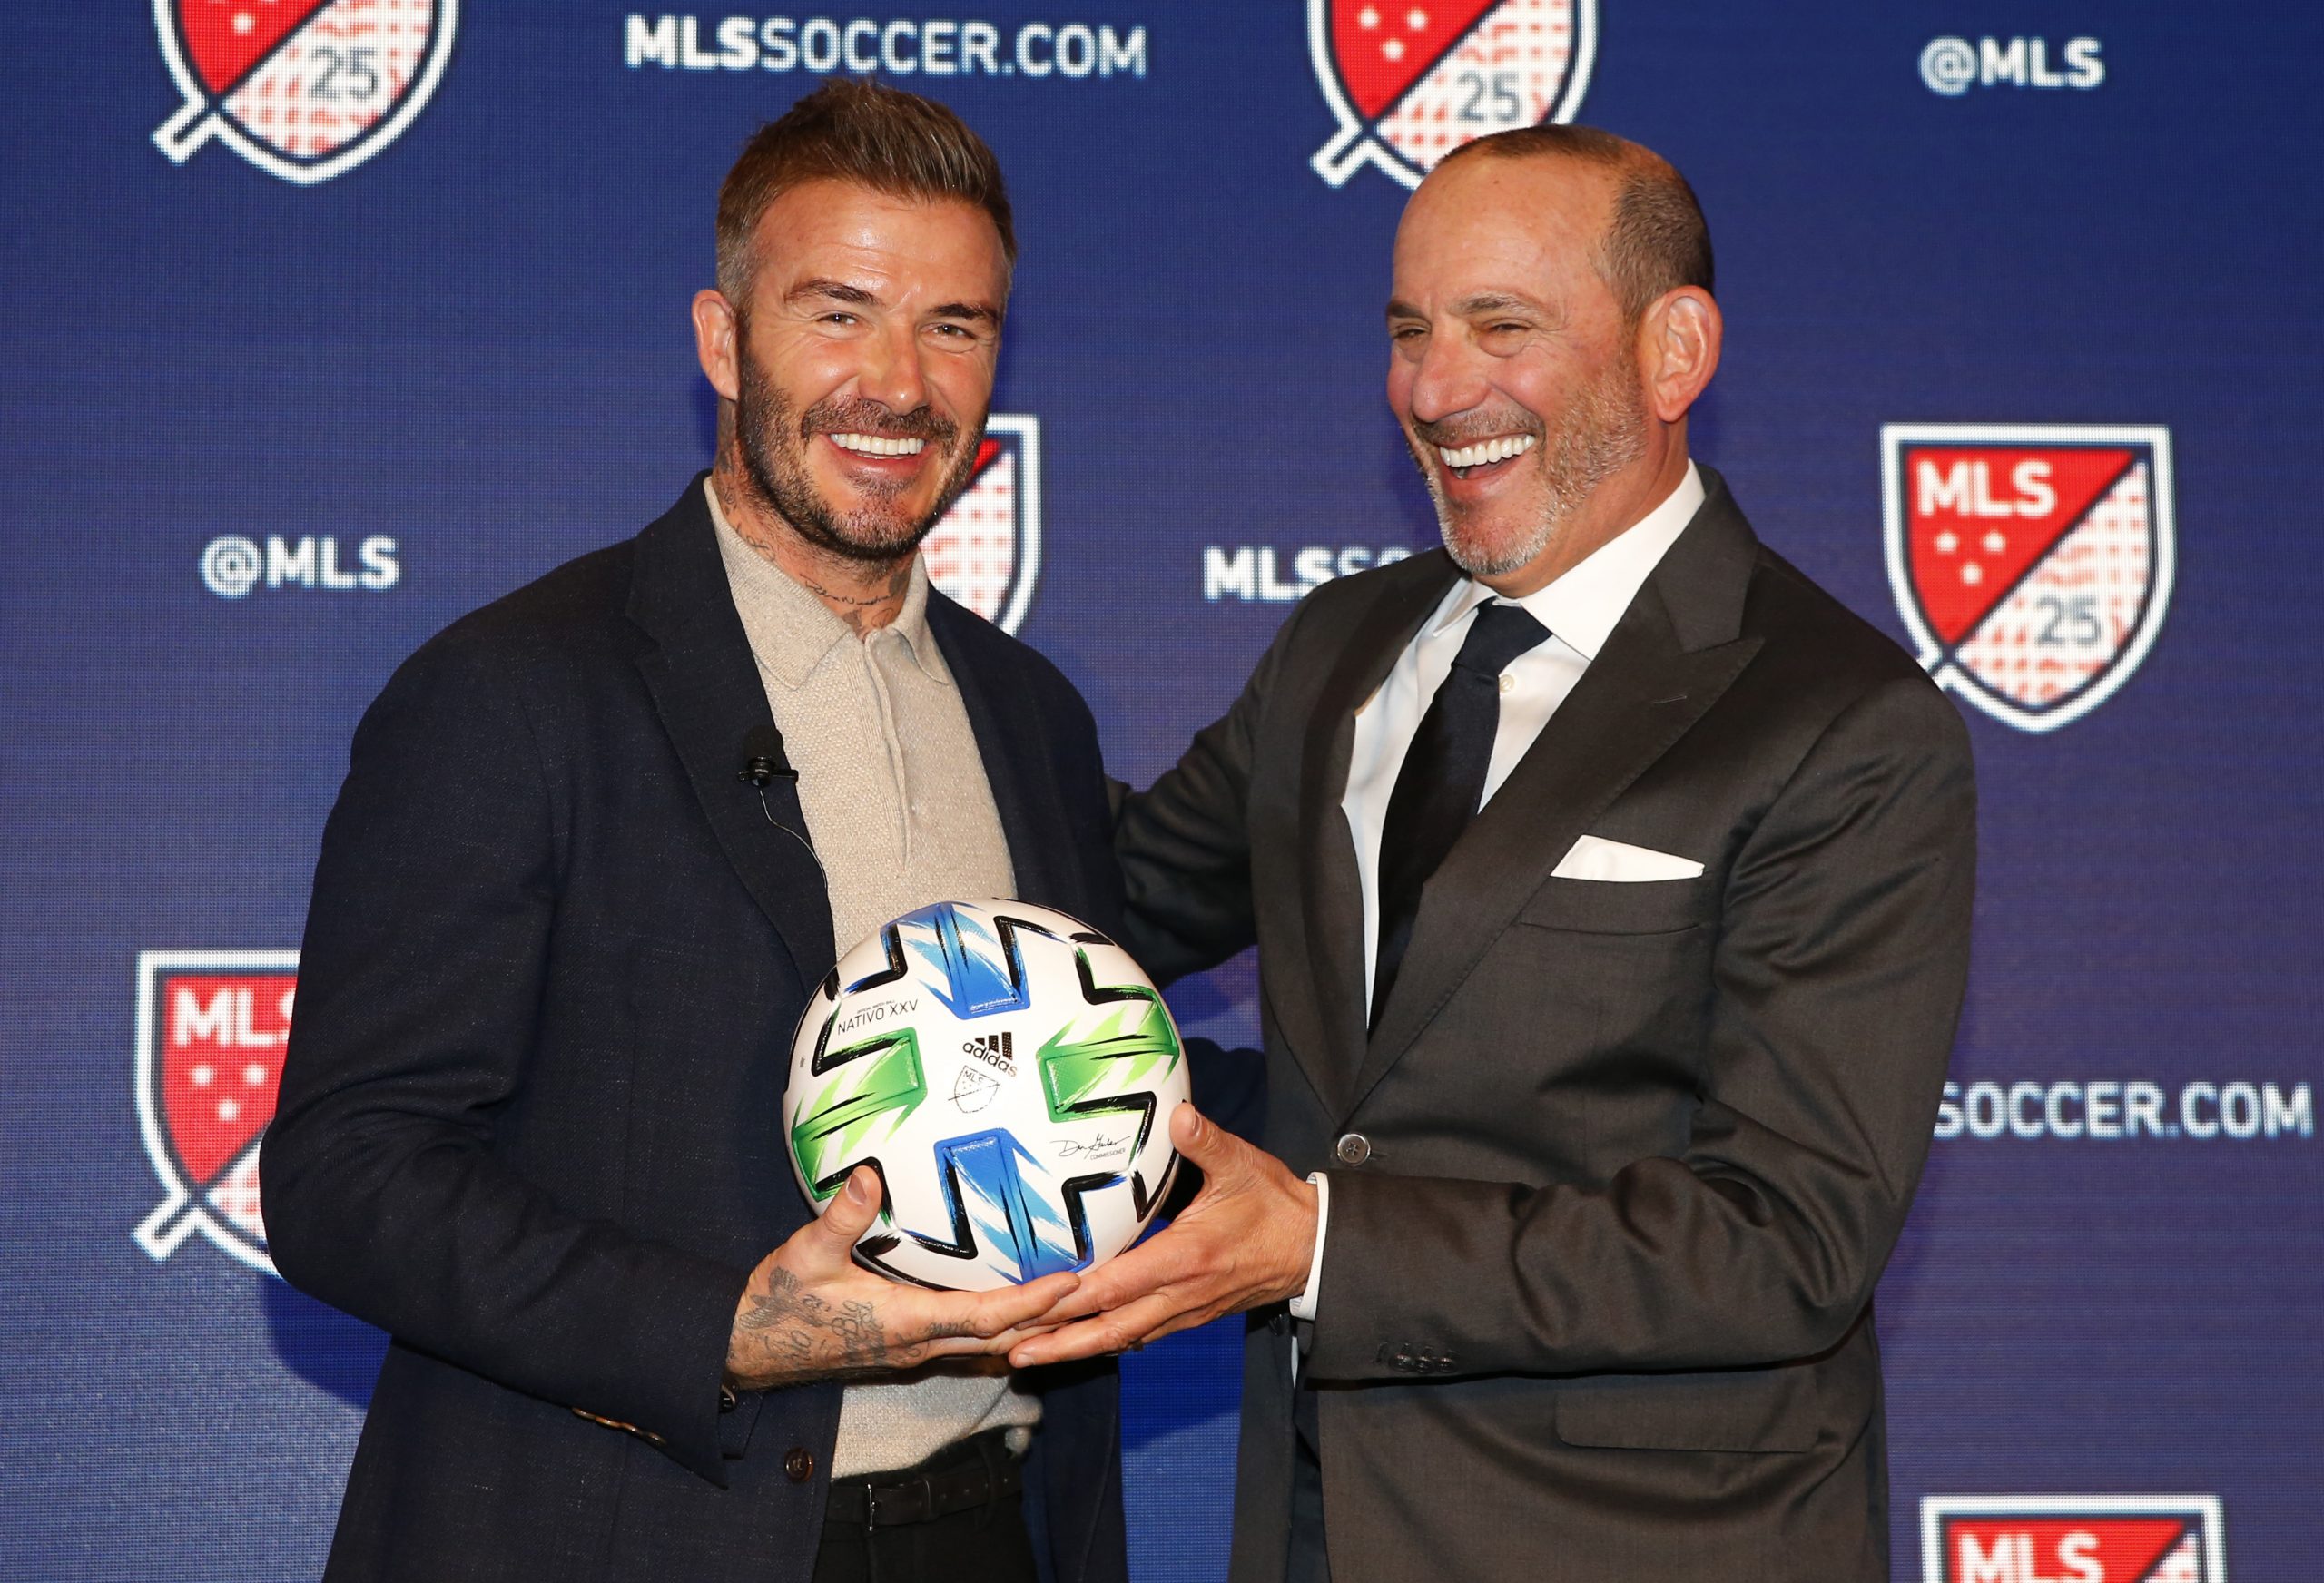 David Beckham and MLS Commissioner Don Garber